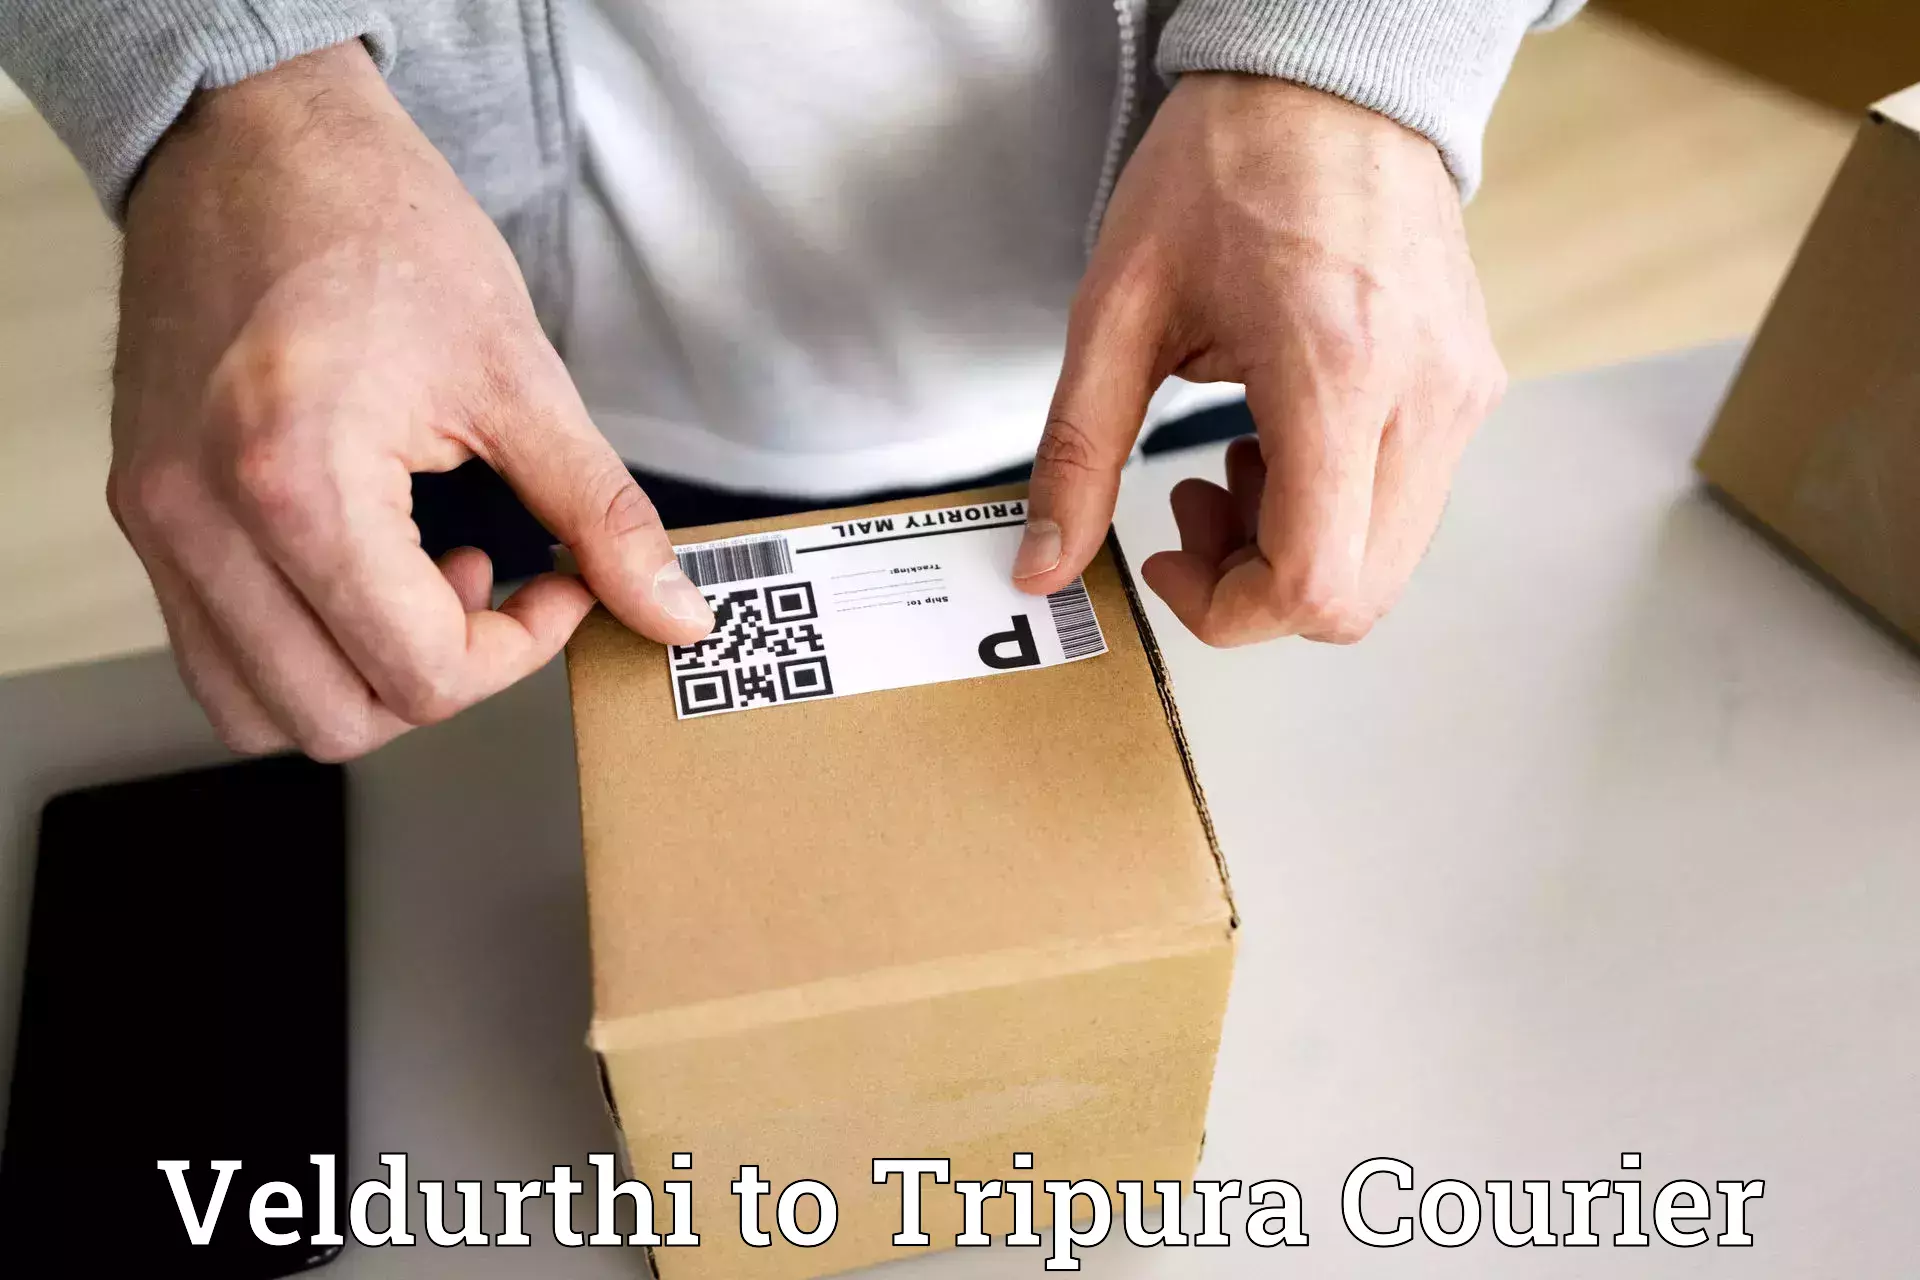 Secure package delivery Veldurthi to Sonamura